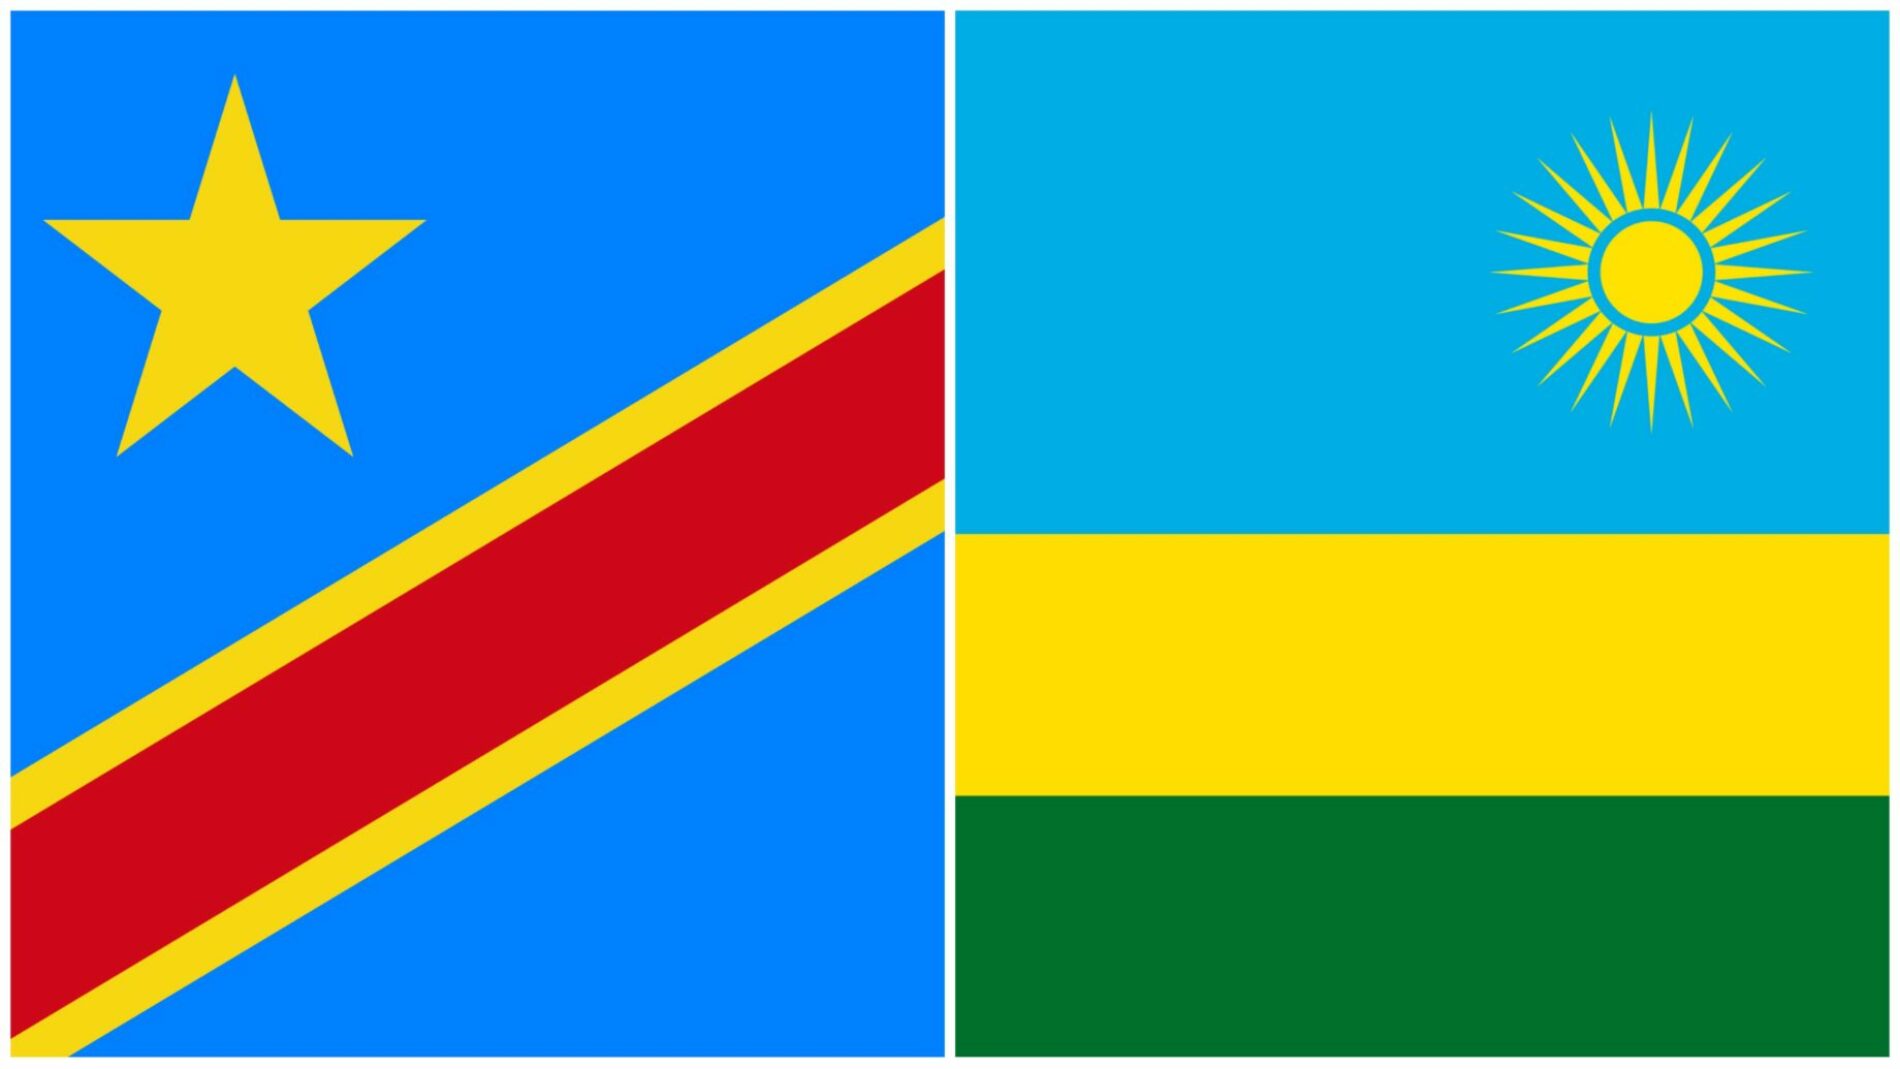 Rwanda-DRC: jamii ya kimataifa inasifu amani ya mdomoni (Paul Kagame)